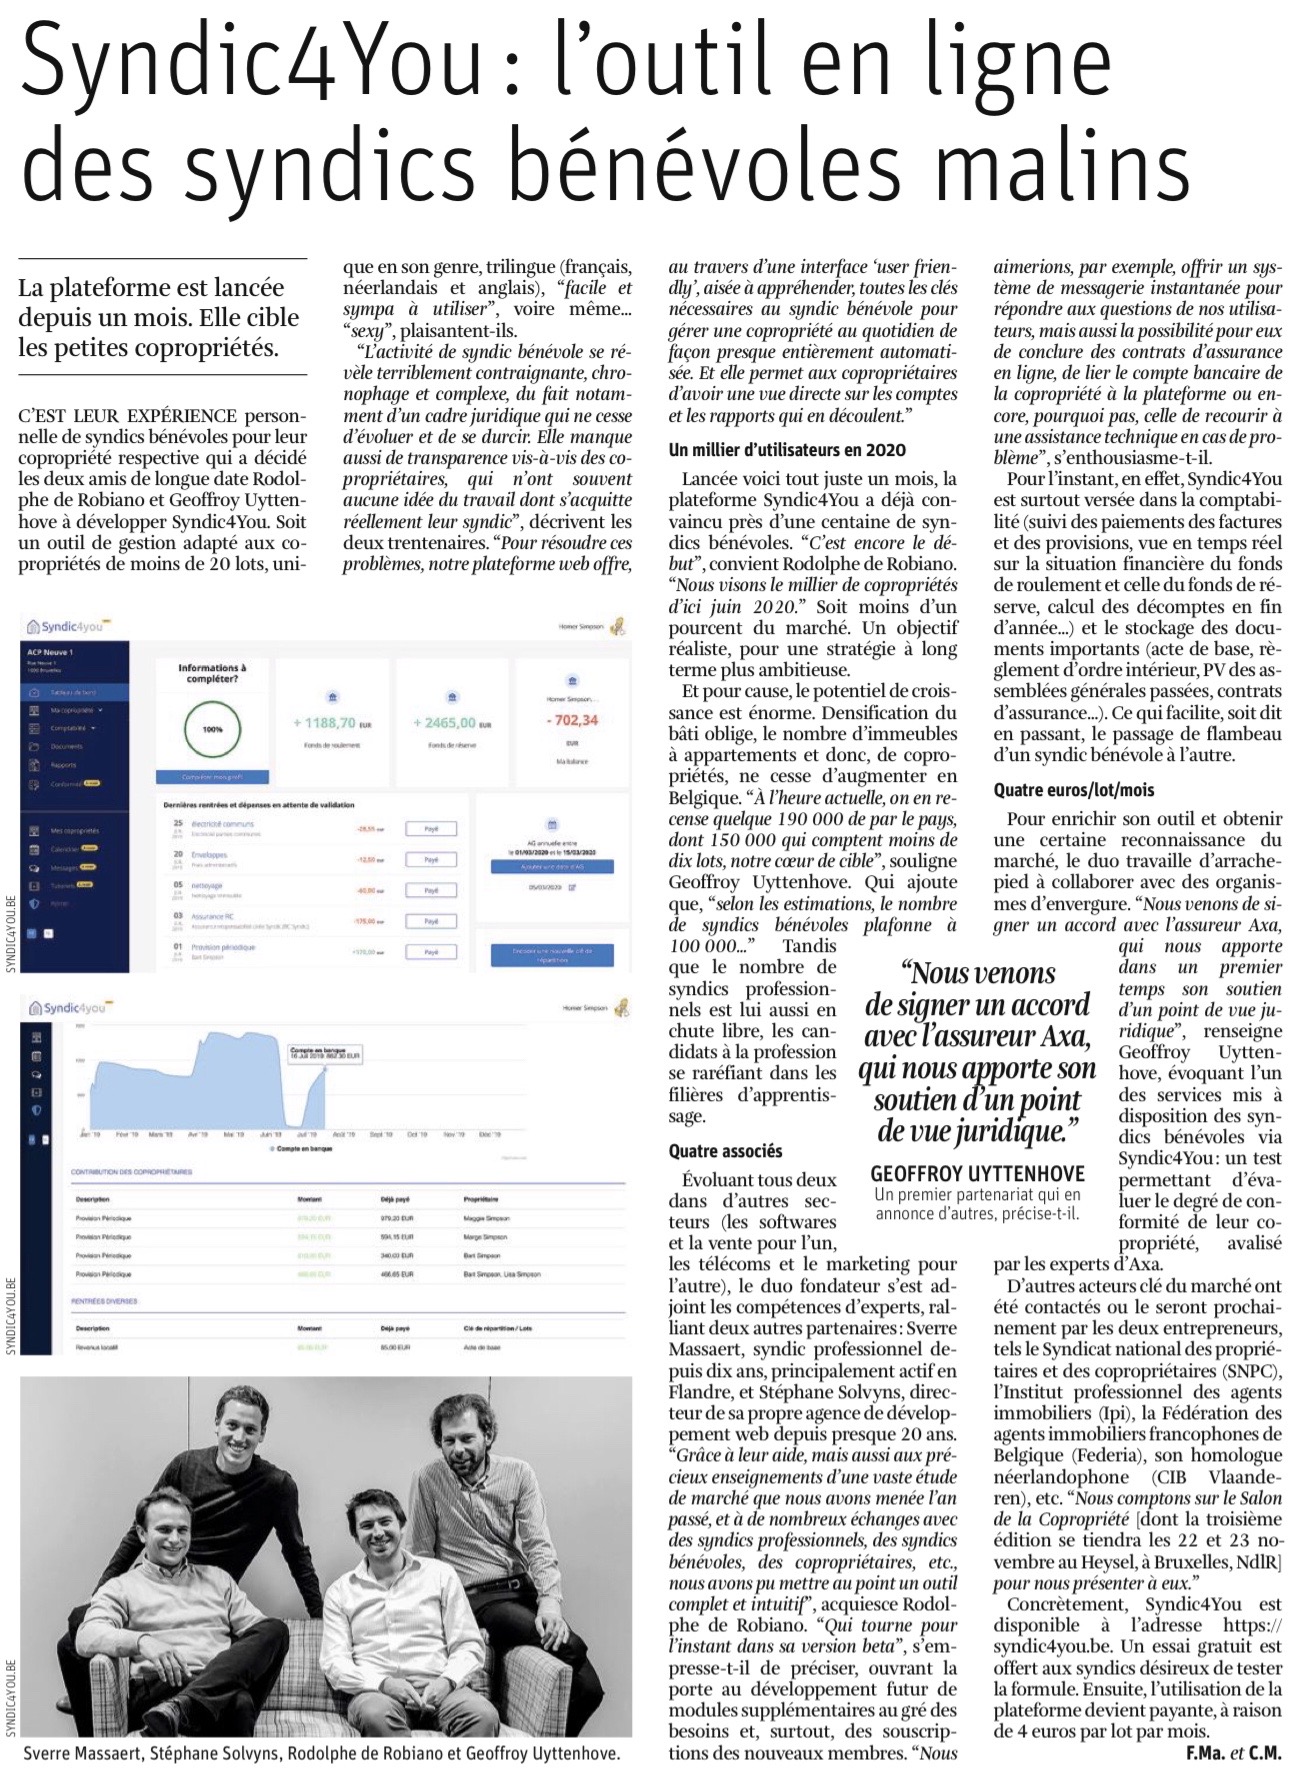 Article-La-Libre-31-oct-2019